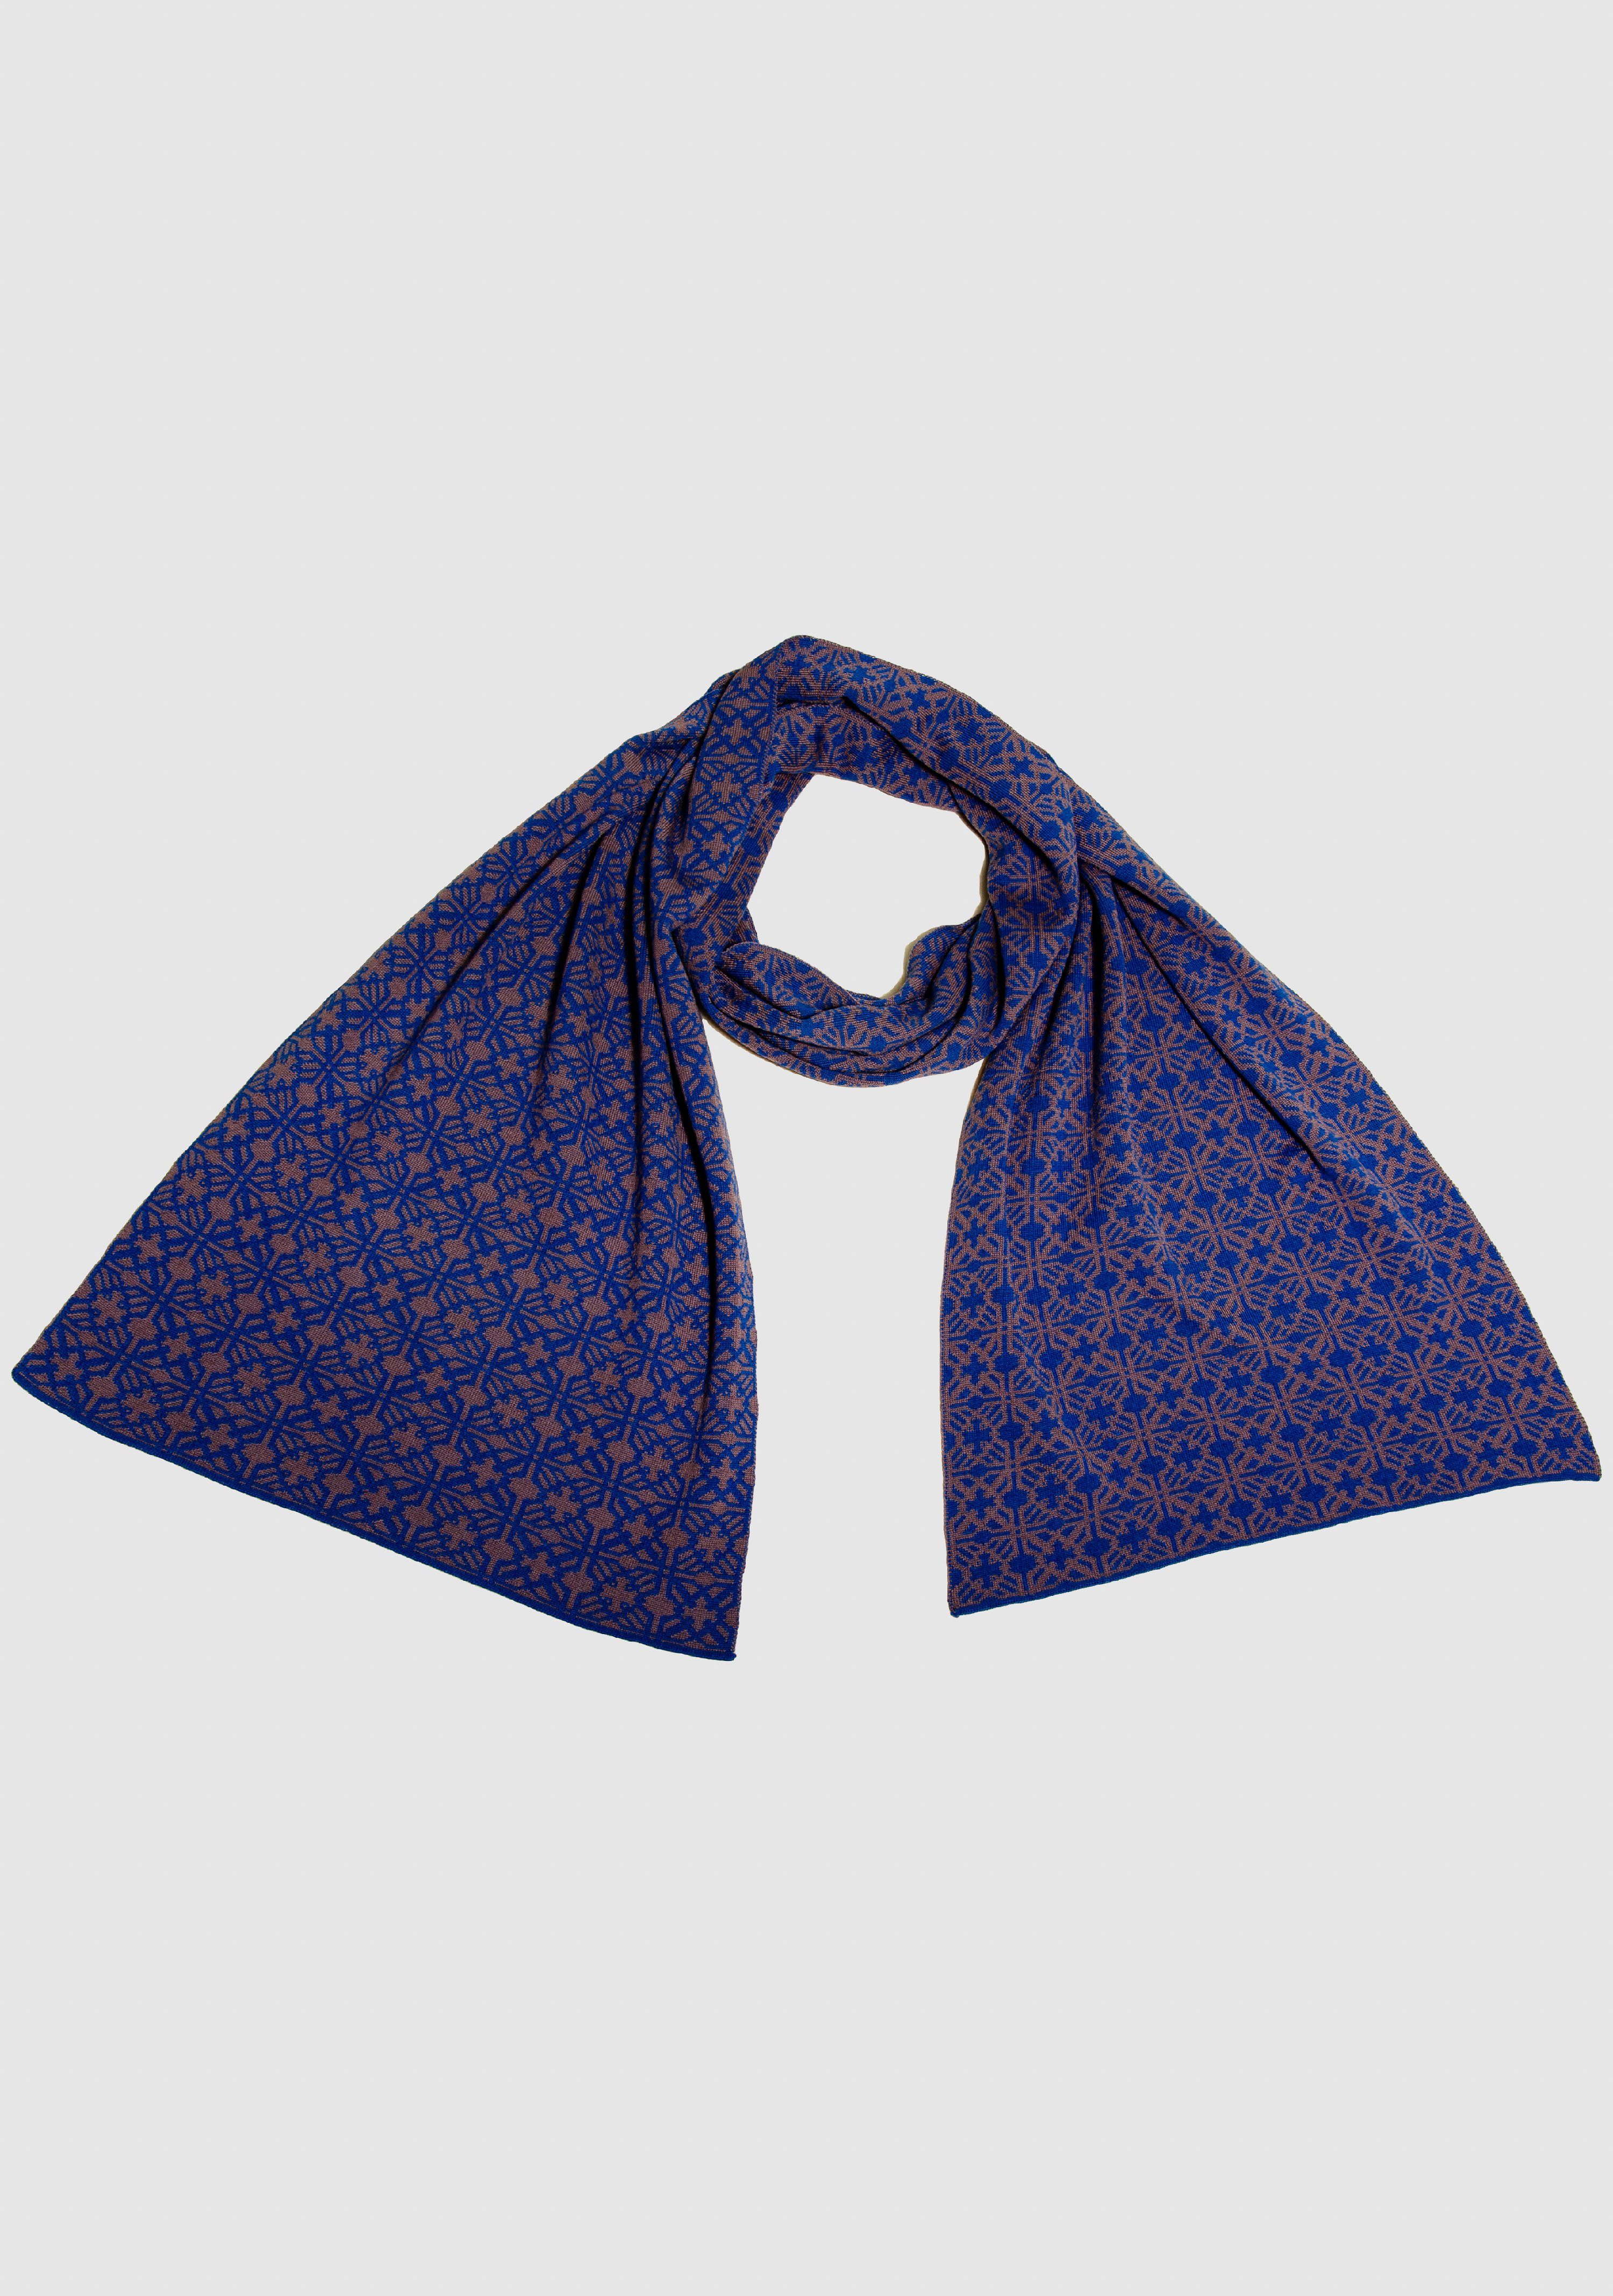 Merino Irland royal_brombeere fashion LANARTO extrasoft Wollschal Farben 100% slow in schönen Schal